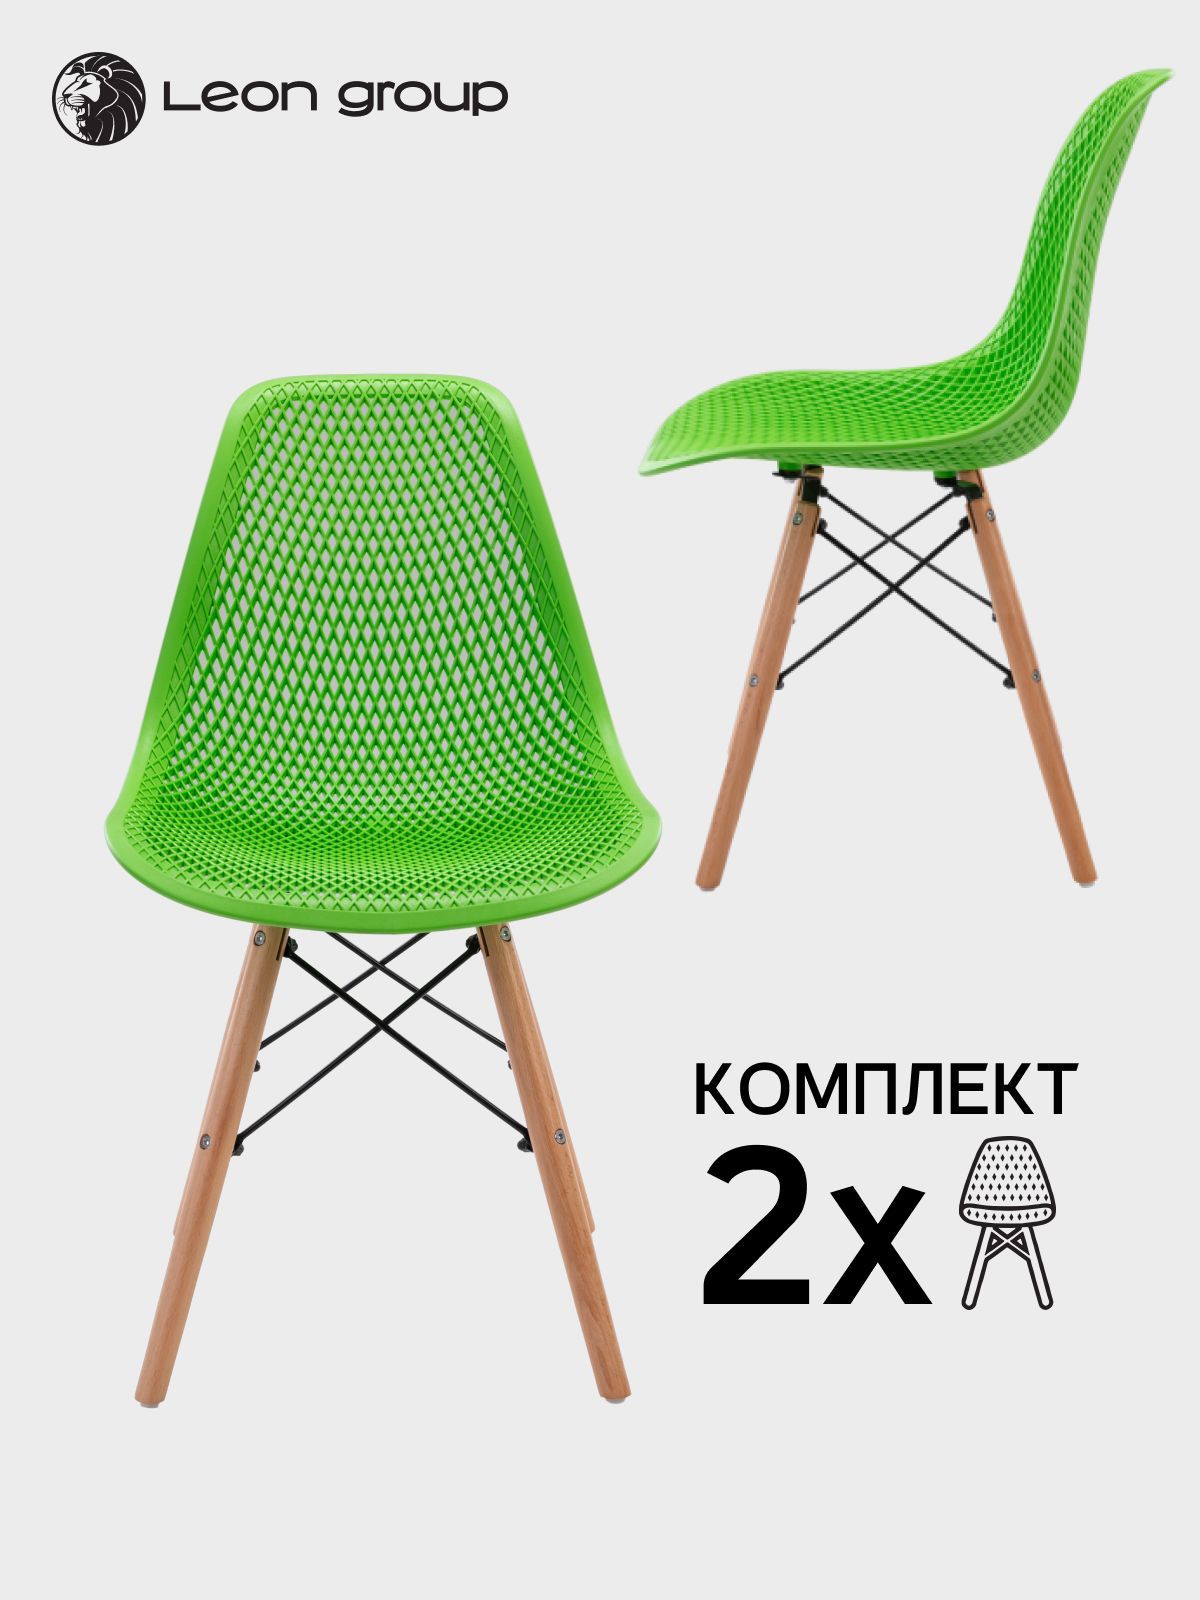 LEON GROUP Комплект стульев LEON GROUP в стиле EAMES DSW с перфорацией, 2 шт.